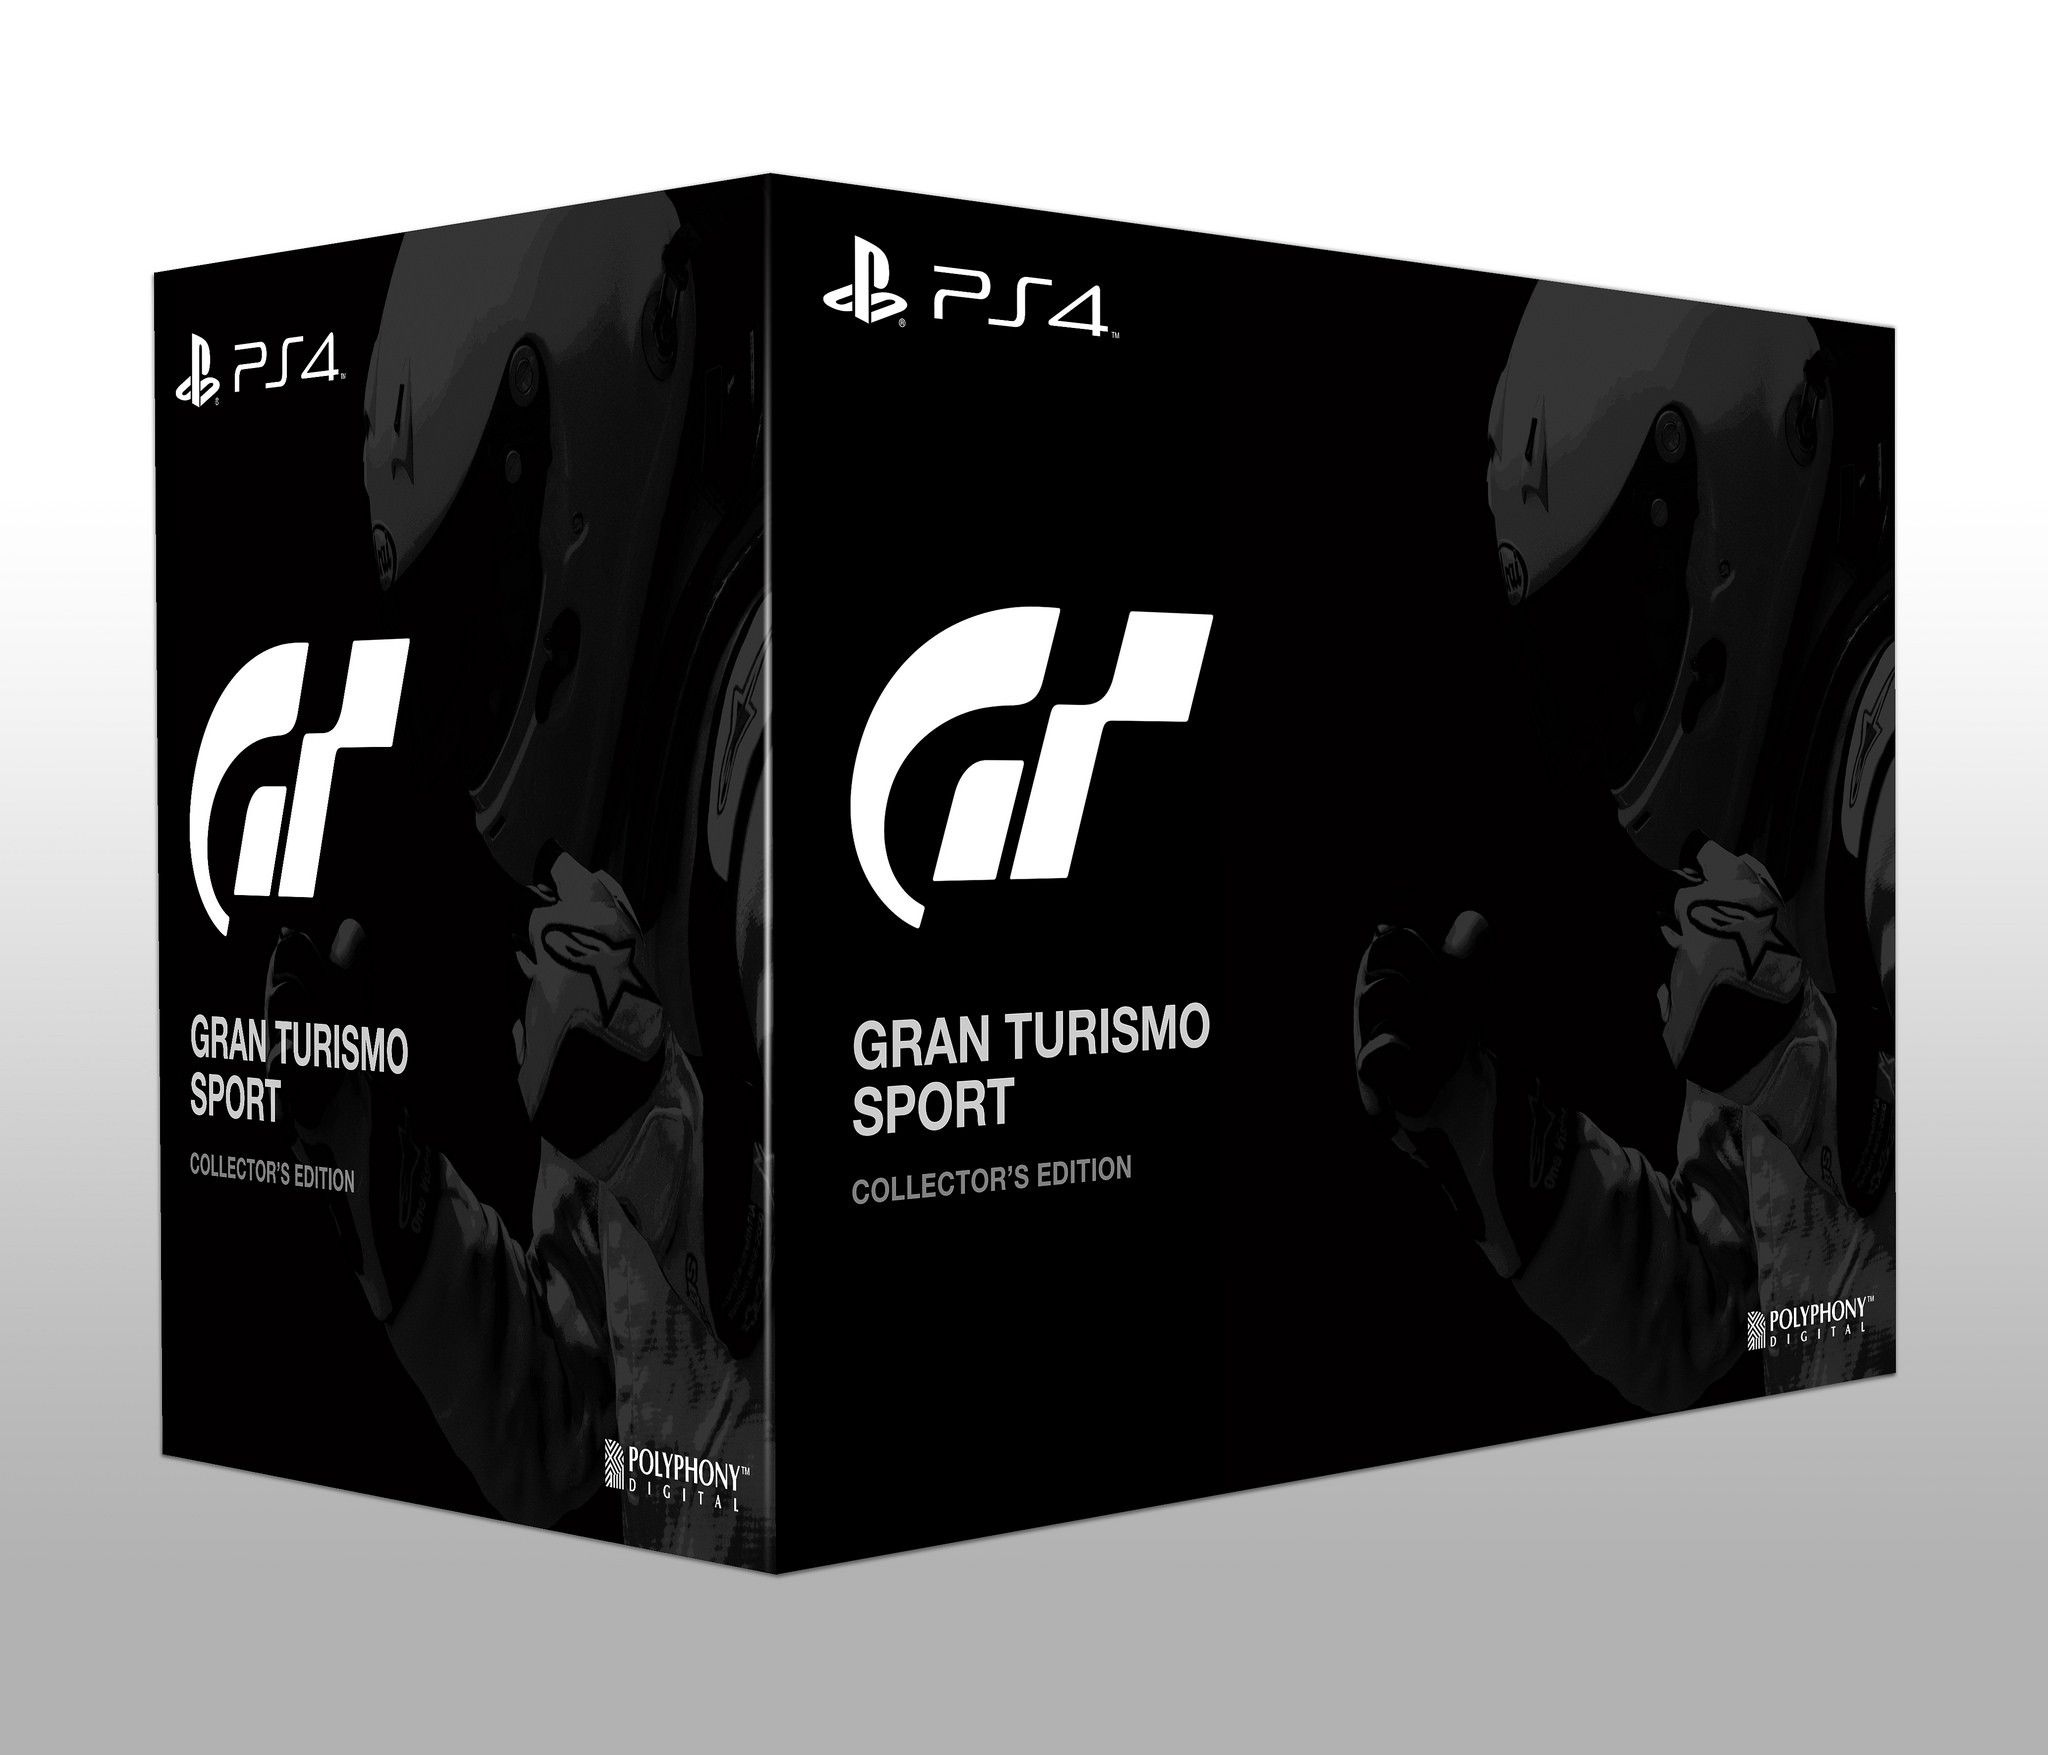 Sport Collector’s Edition include una miniatura della Mercedes-AMG GTS ed una guida dettagliata dagli sviluppatori di Polyphony Digital